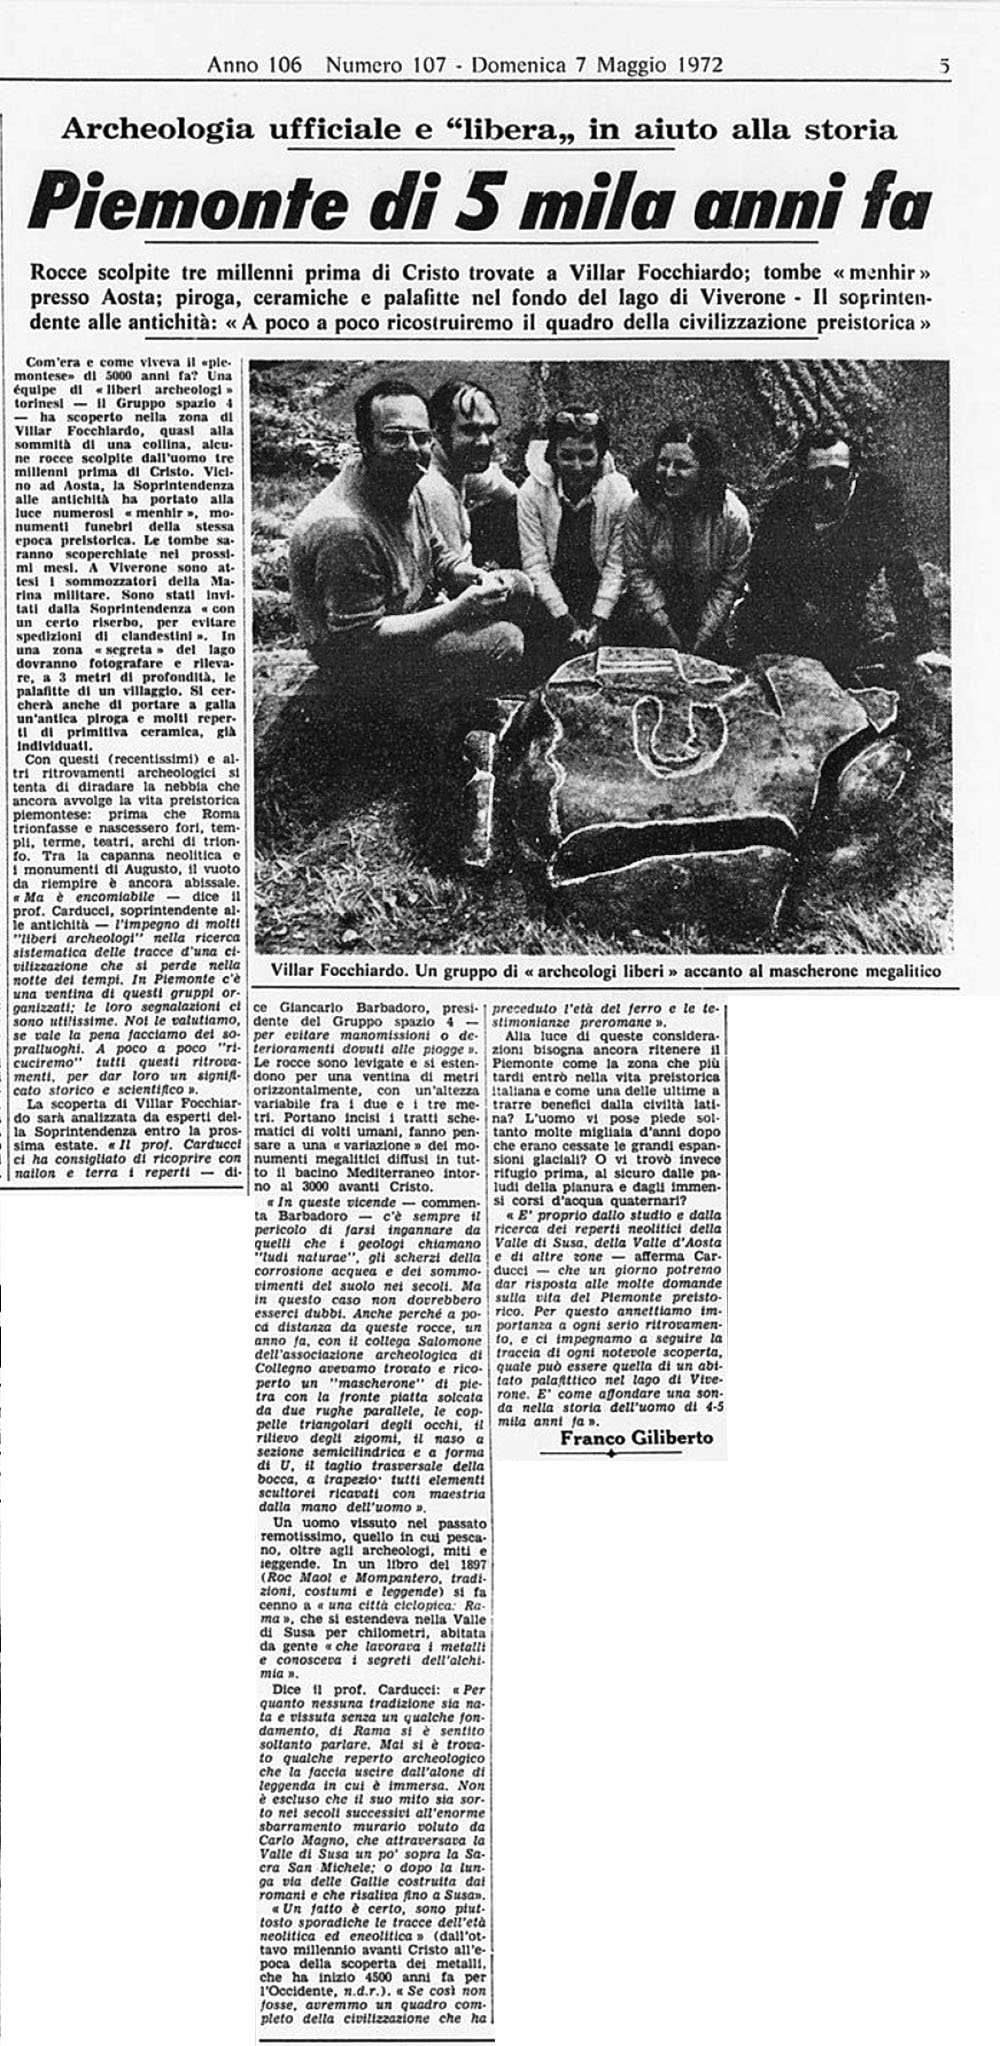 "Piemonte di 5 mila anni fa". La Stampa, 7 maggio 1972 (Archivio Storico La Stampa)